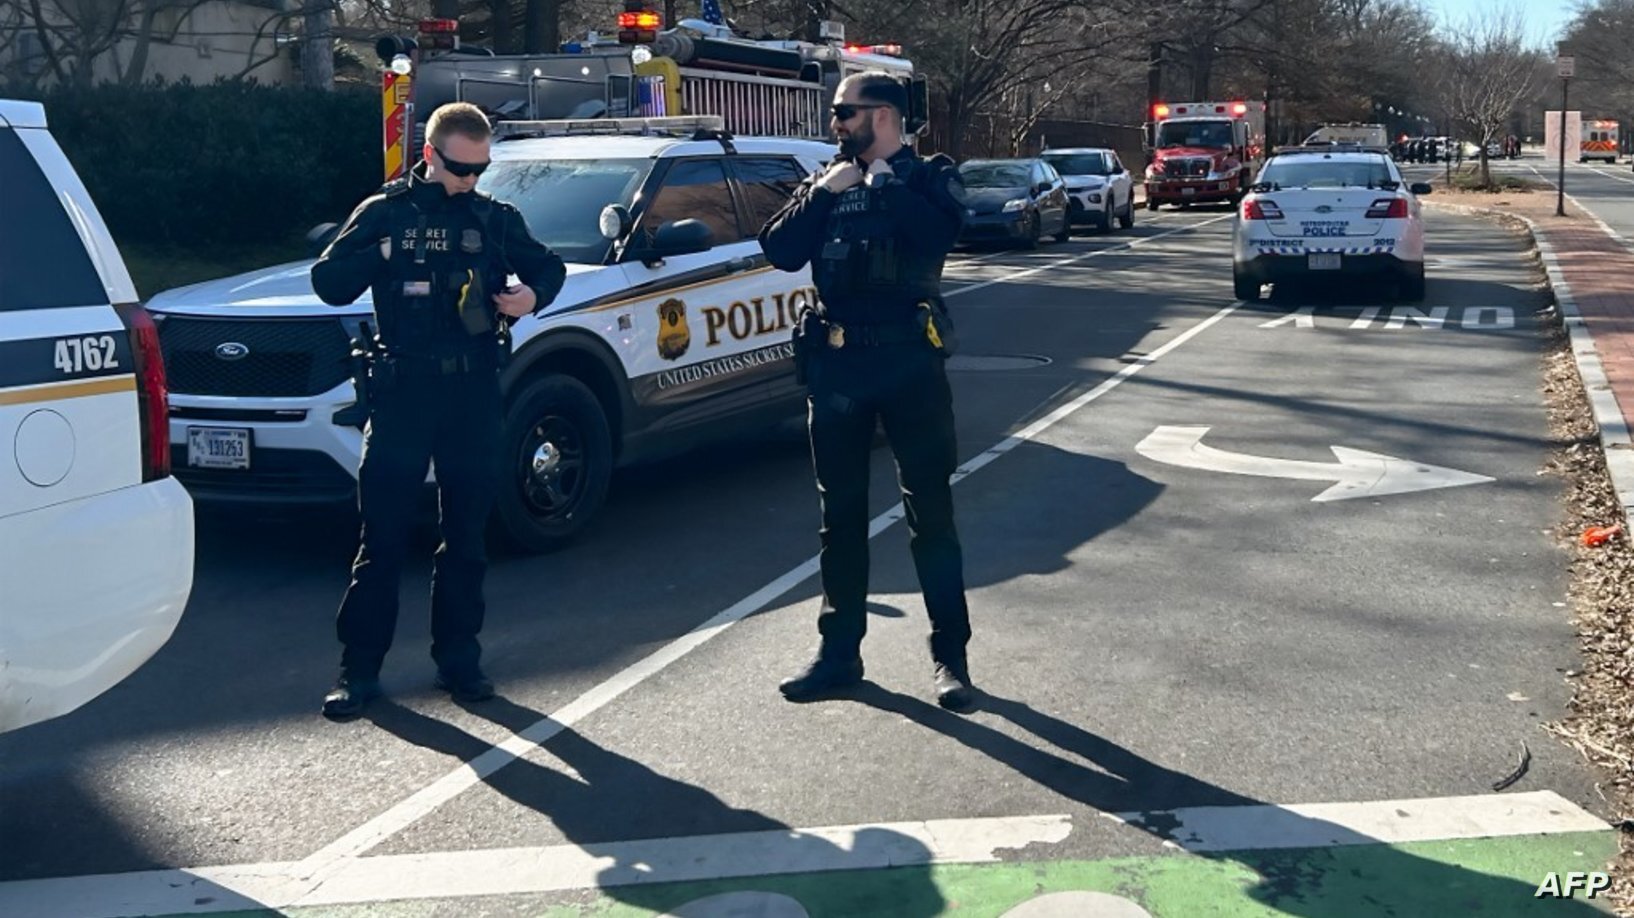 سفارت اسرائیل در واشنگتن بعد از حادثه خودسوزی  - خودروهای پلیس در خیابان منتهی به سفارت ایستاده اند